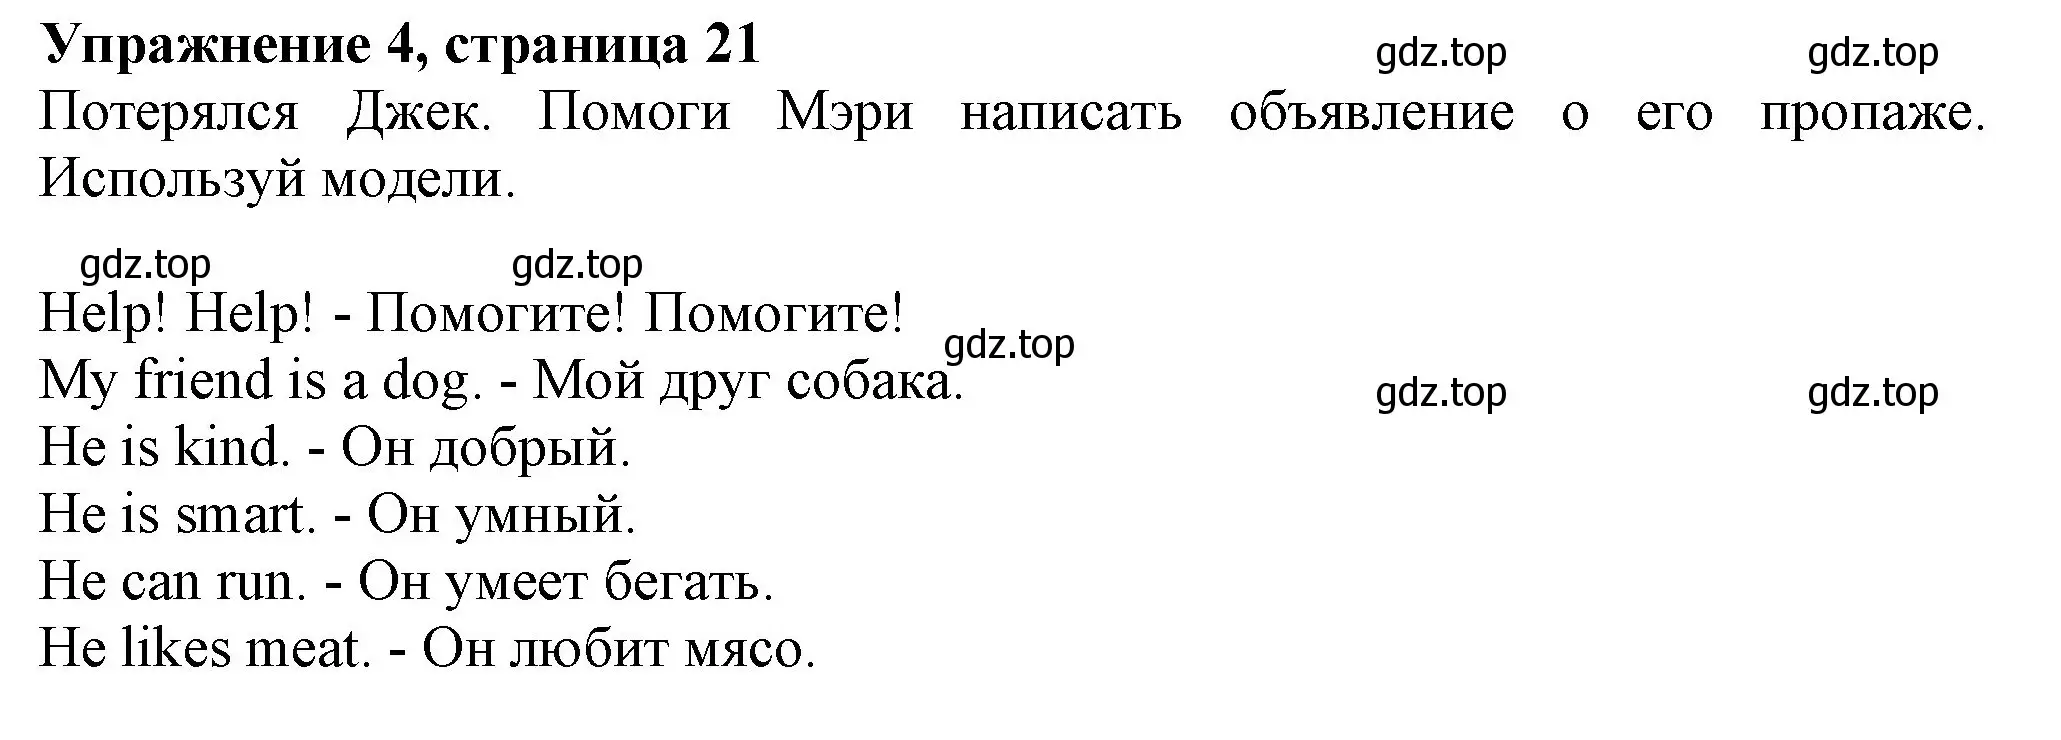 Решение номер 4 (страница 21) гдз по английскому языку 3 класс Биболетова, Денисенко, рабочая тетрадь